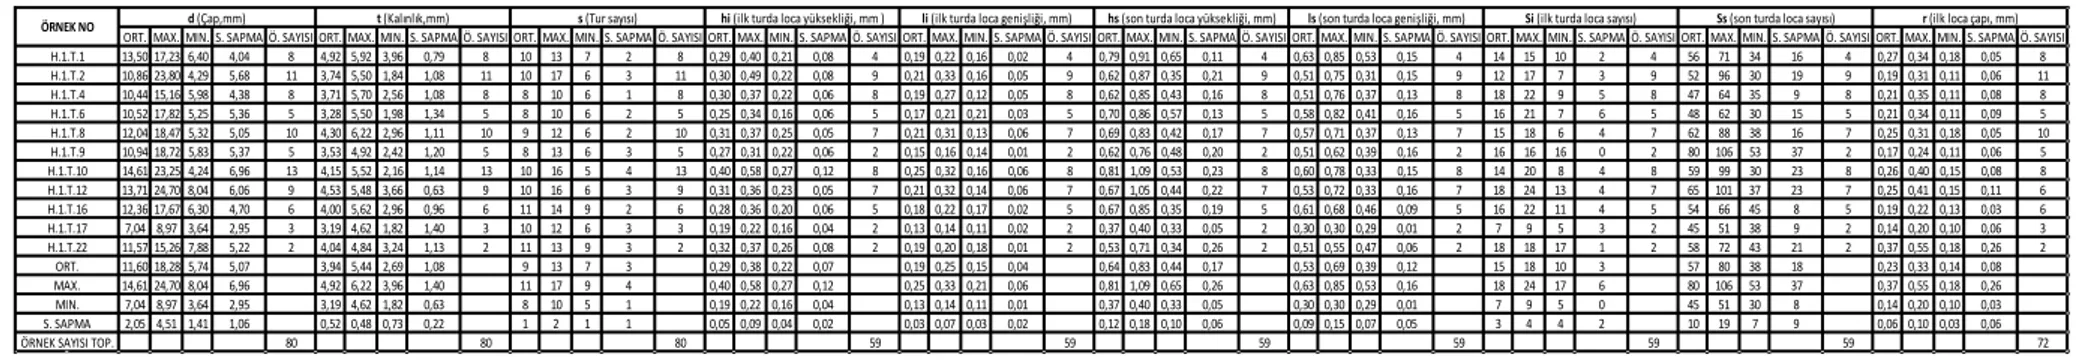 Tablo 4.7. Nummulites perforatus (B - formu) için biyometrik parametre  değerleri 